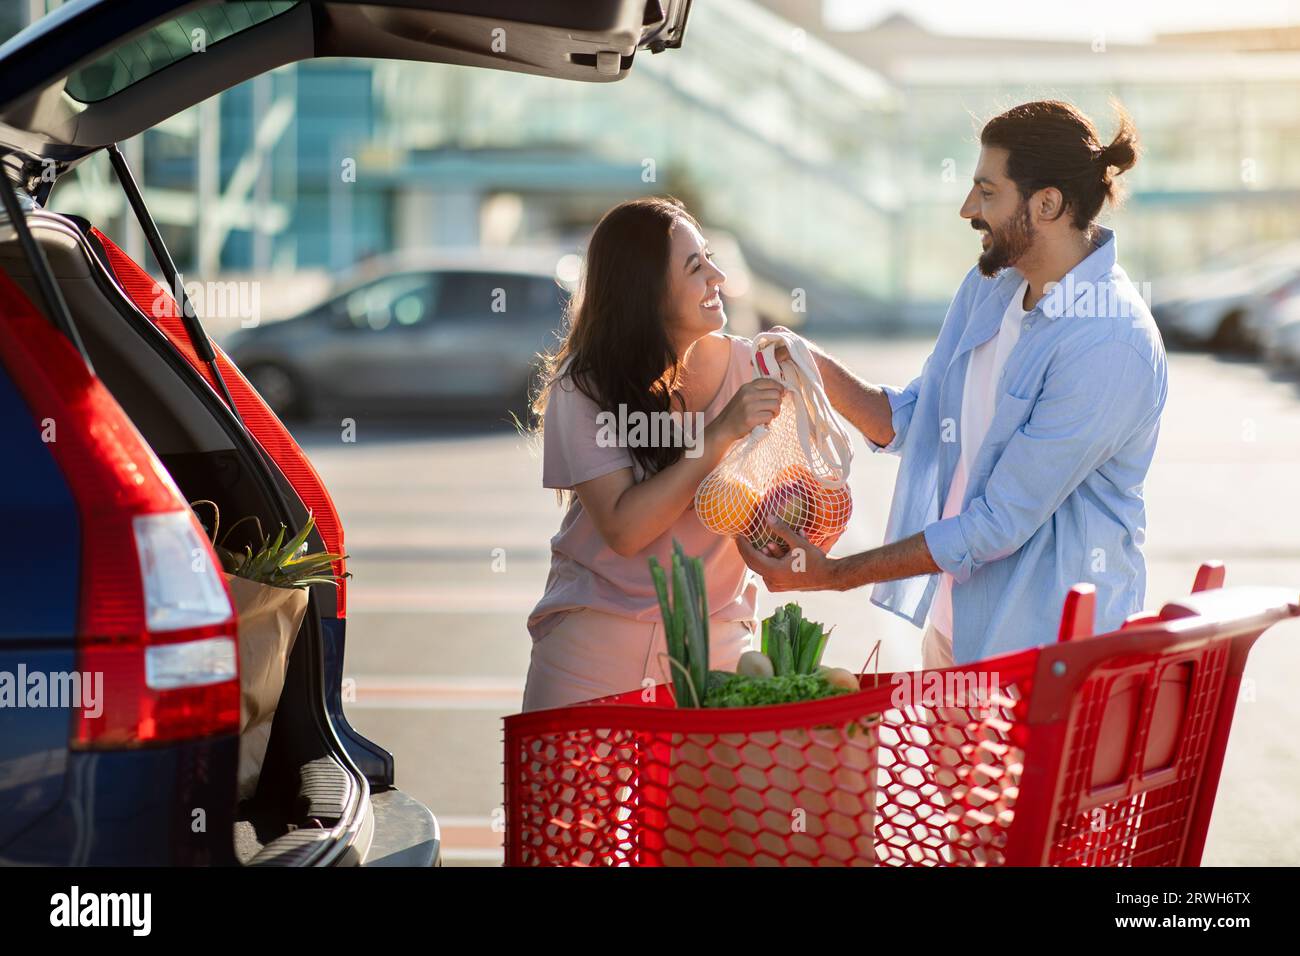 Glückliches lateinisches Paar, das auf dem Parkplatz steht und Papiertüten nach dem Einkaufen in den offenen Kofferraum lädt Stockfoto